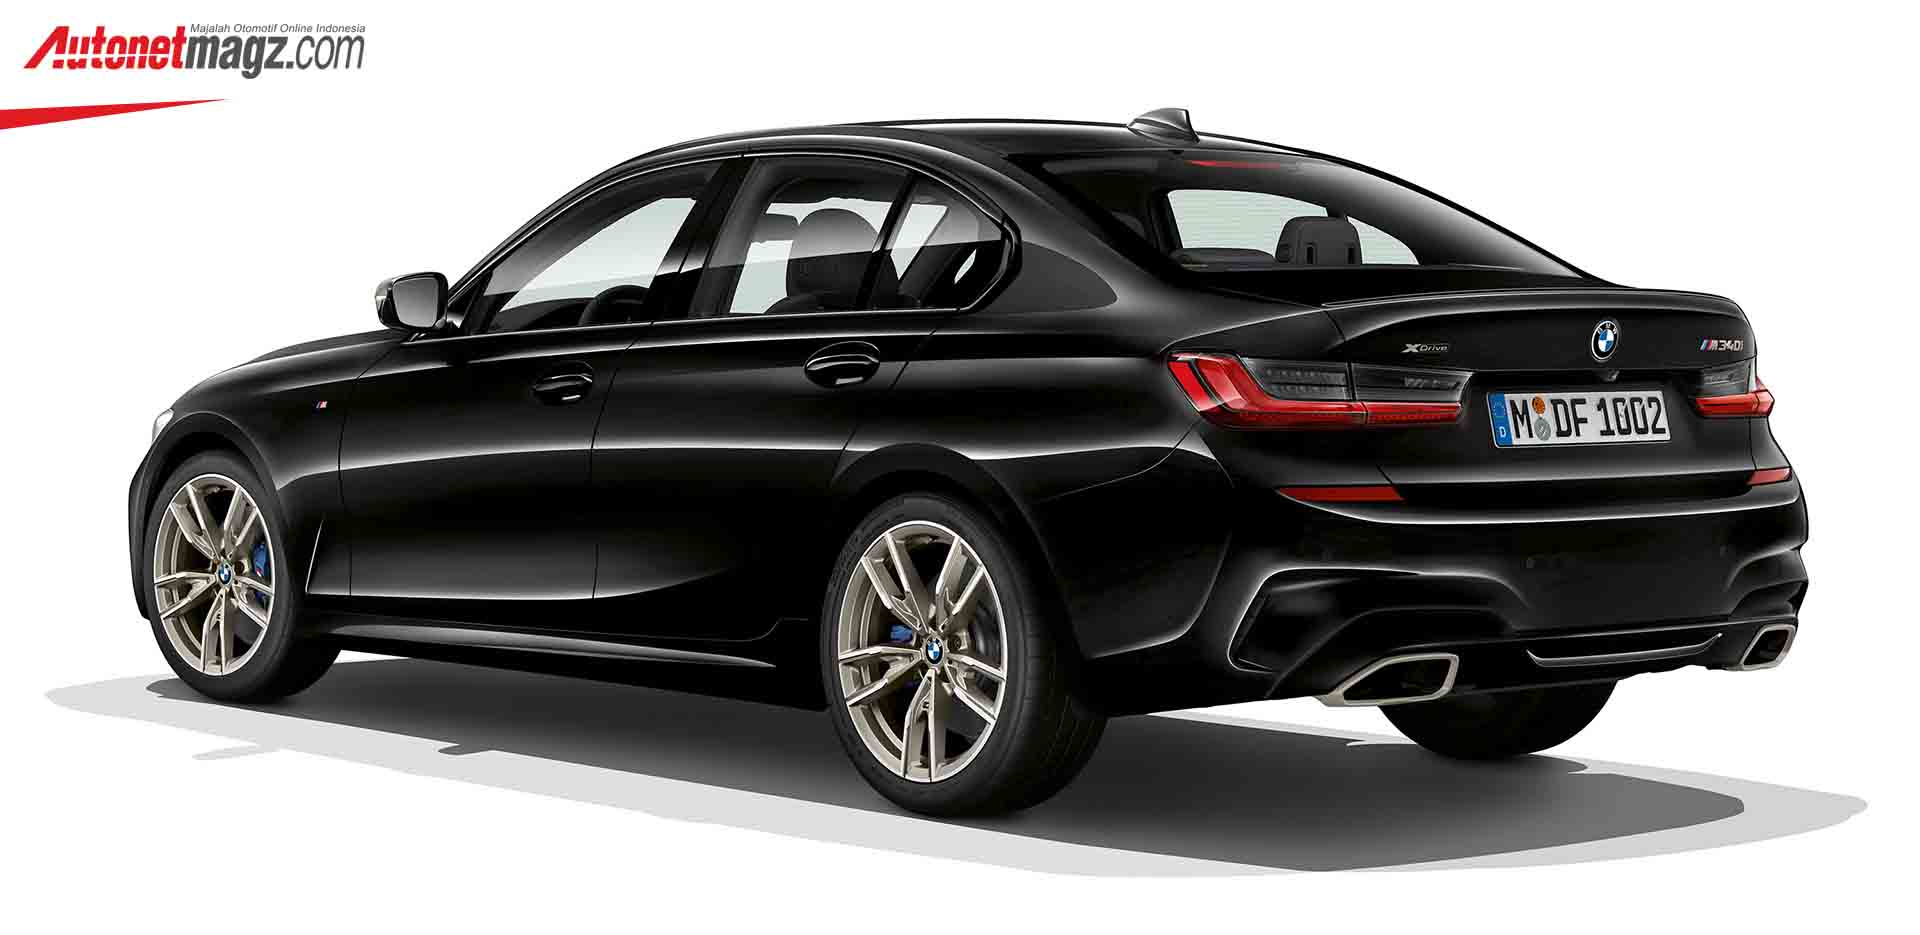 Berita, BMW M340i xDrive G20 belakang: BMW M340i xDrive G20, Capai 100 km/jam Hanya Dalam 4,4 Detik!